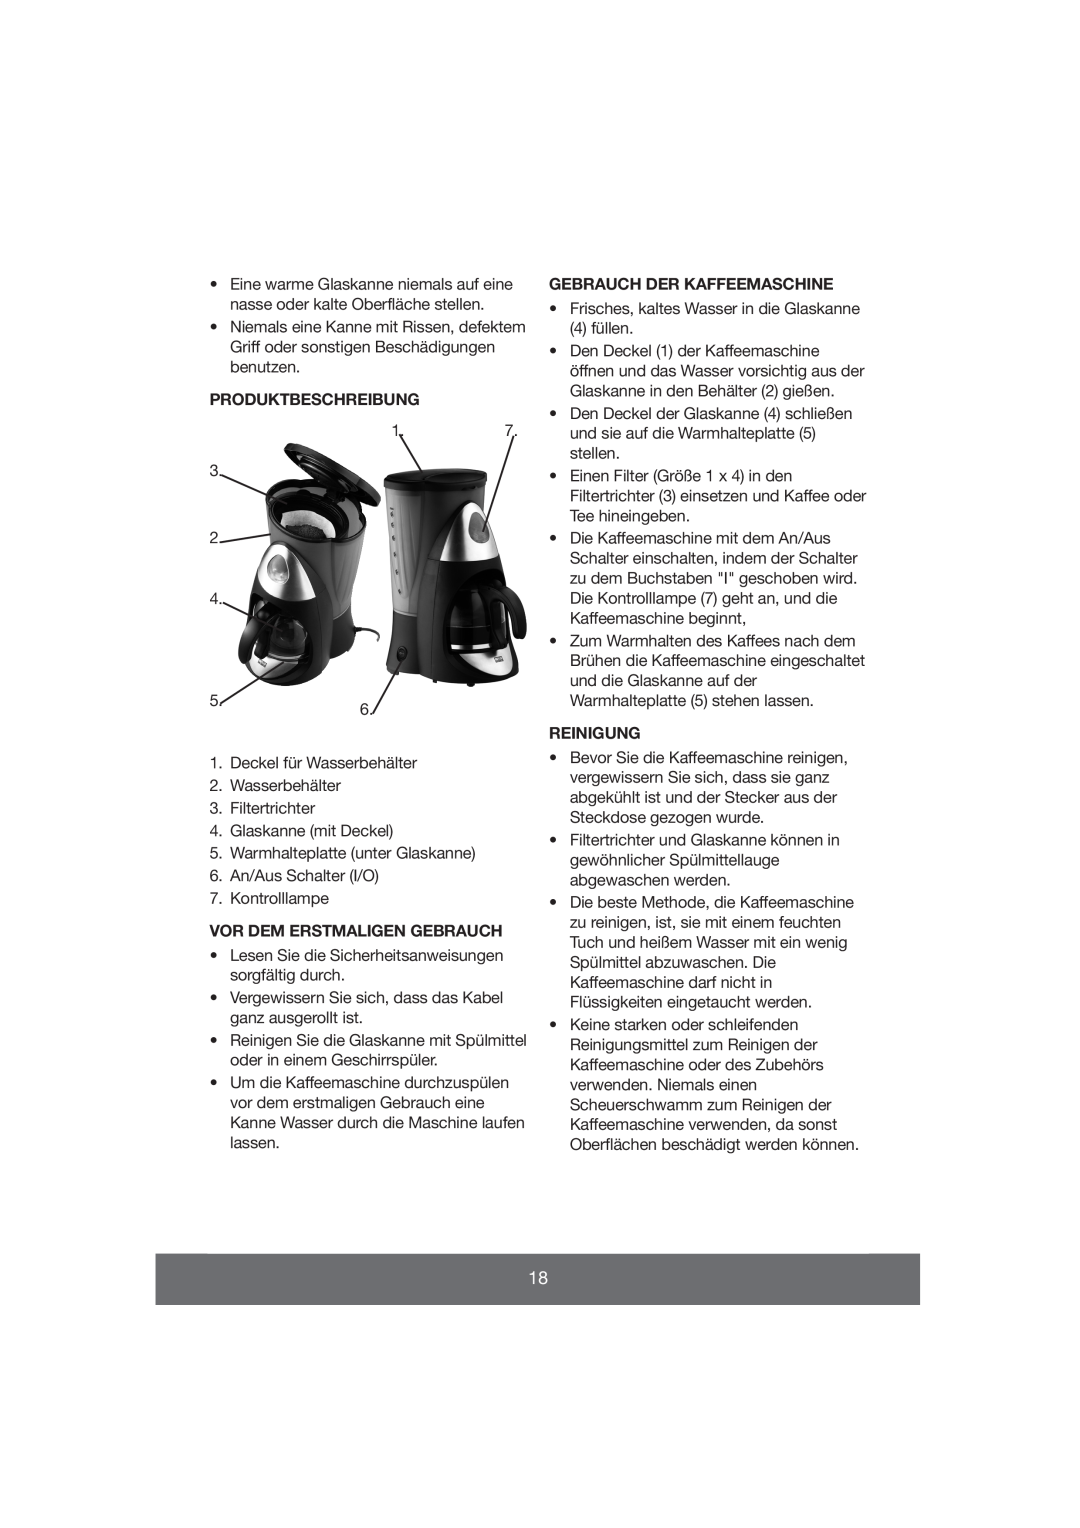 Butler 645-061 manual Gebrauch Der Kaffeemaschine, Produktbeschreibung, Reinigung, Vor Dem Erstmaligen Gebrauch 